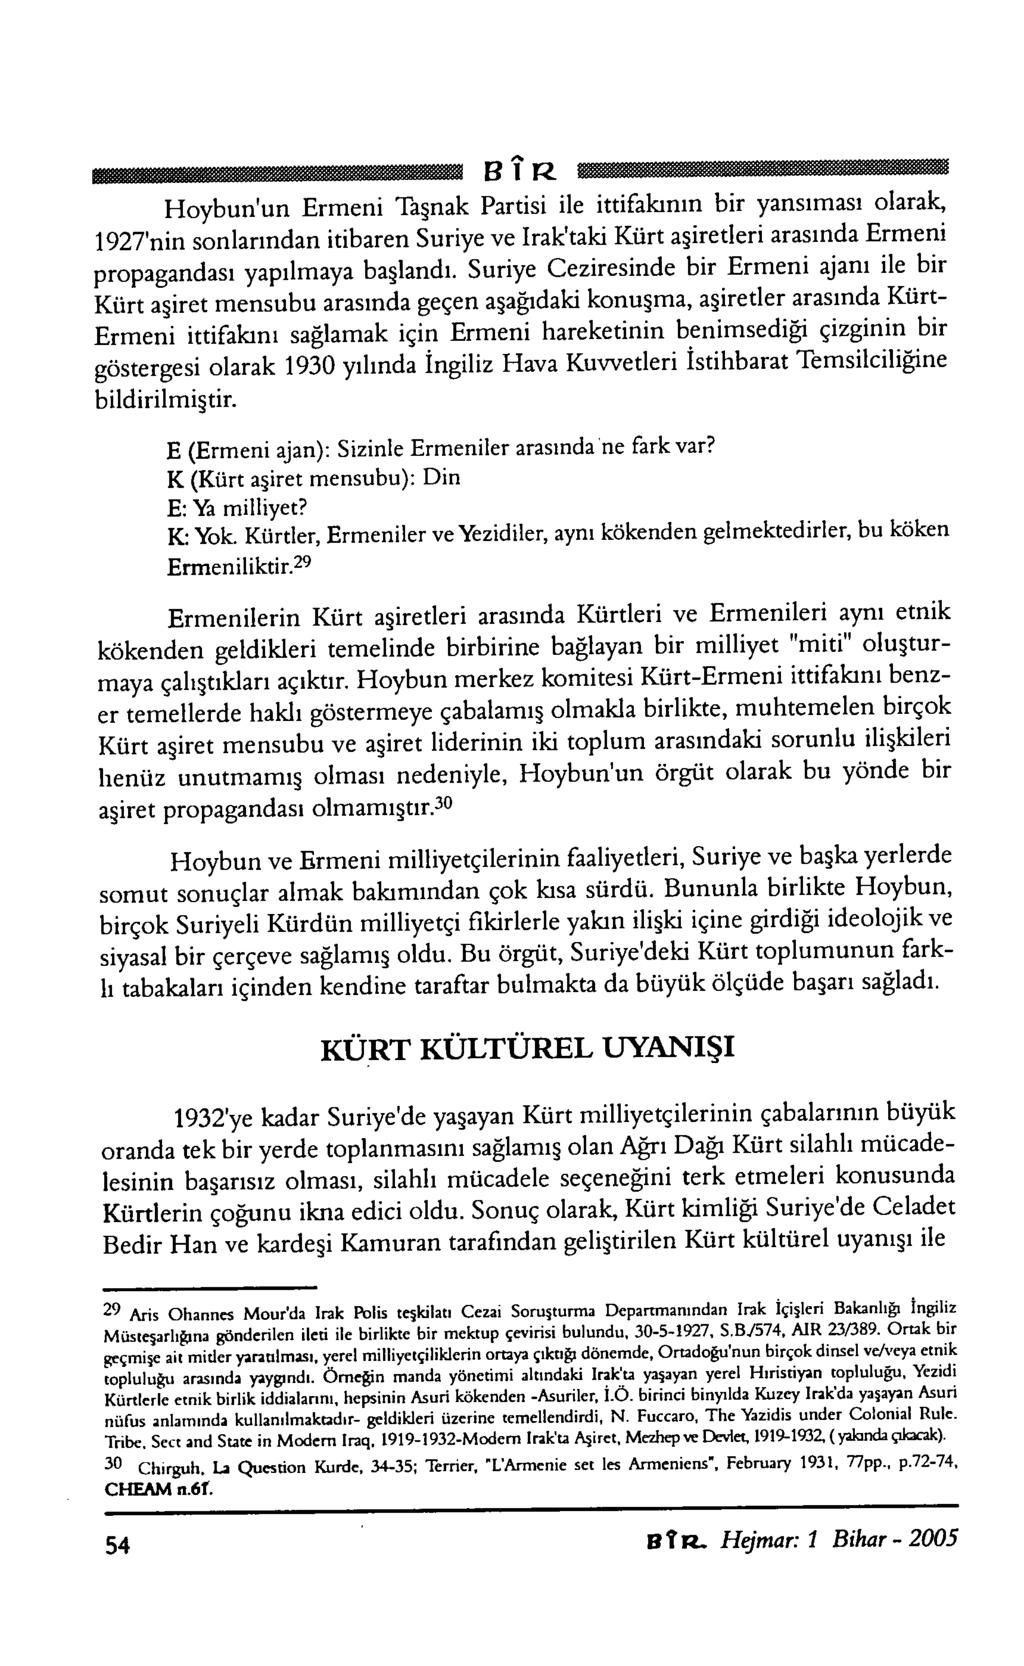 BÎR Hoybun'un Ermeni Taşnak Partisi ile ittifakının bir yansıması olarak, 1927'nin sonlarından itibaren Suriye ve Irak'taki Kürt aşiretleri arasında Ermeni propagandası yapılmaya başlandı.